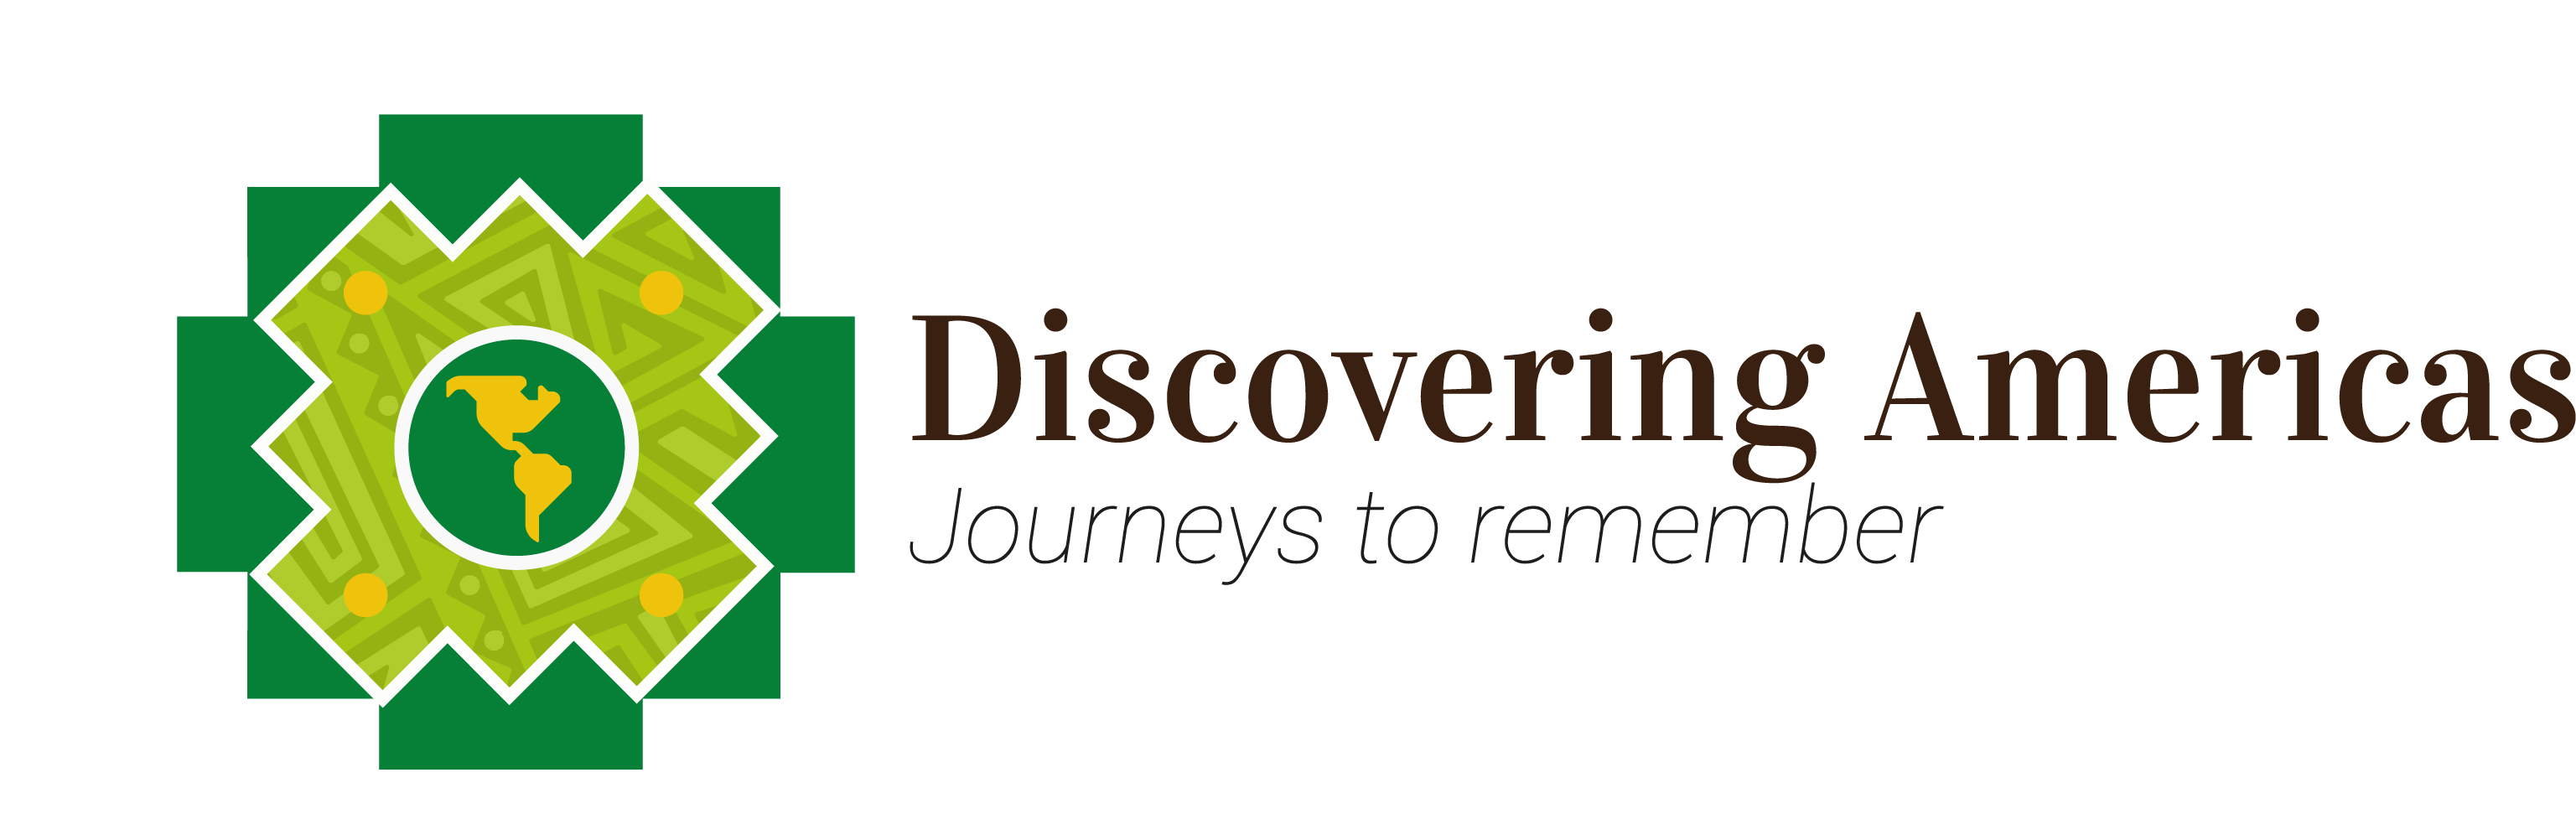 Discovering Americas logo